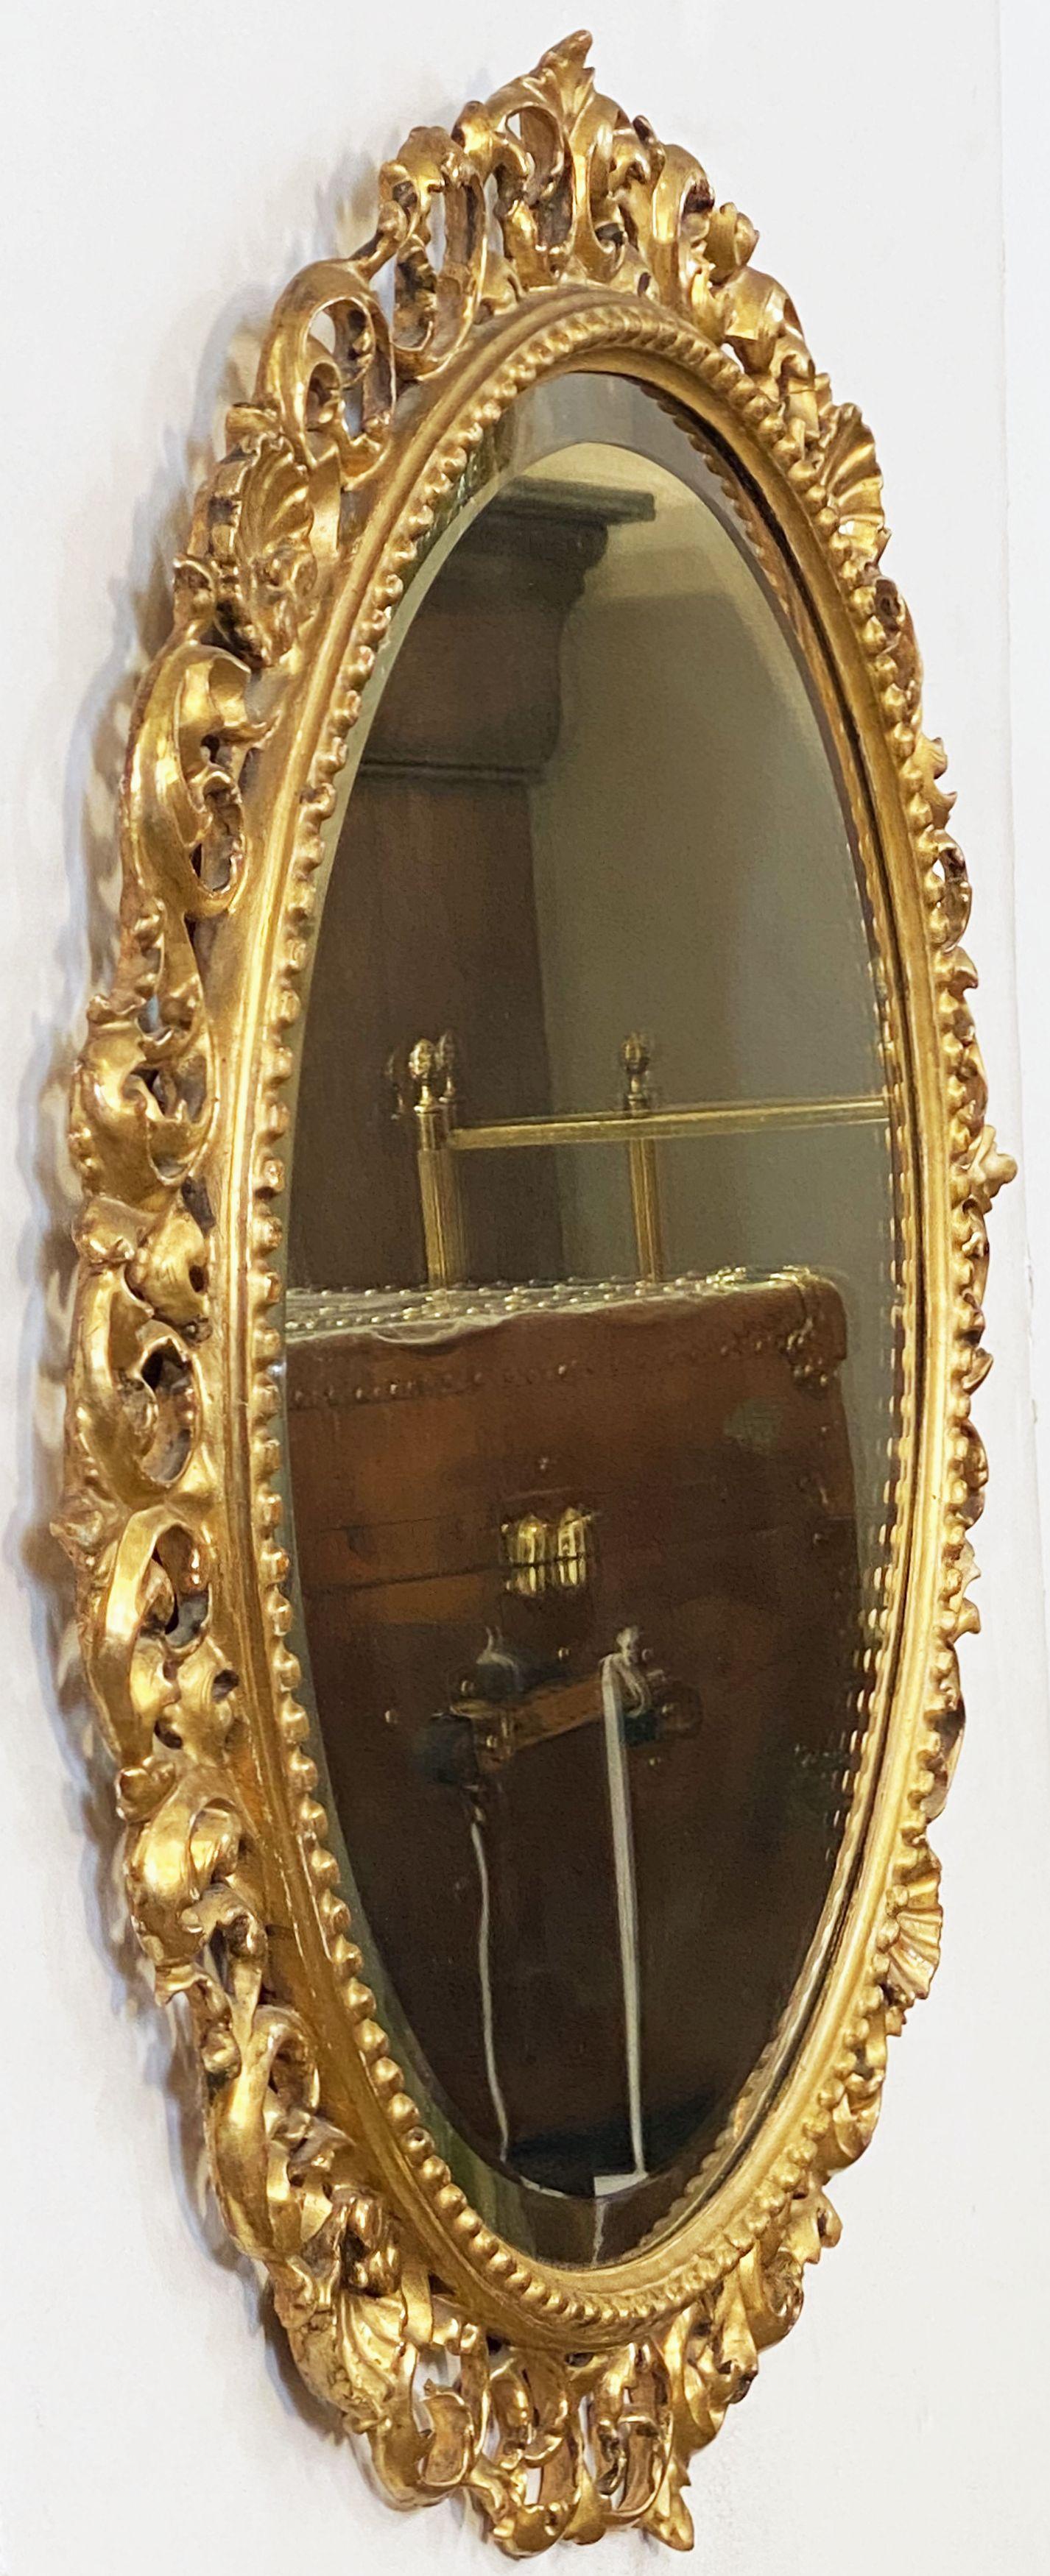 Un beau miroir mural circulaire italien en bois doré sculpté, de style rococo ou florentin, présentant une plaque de miroir ronde biseautée entourée de rinceaux feuillus percés et de coquillages. 

Avec l'étiquette originale du magasin : Henry